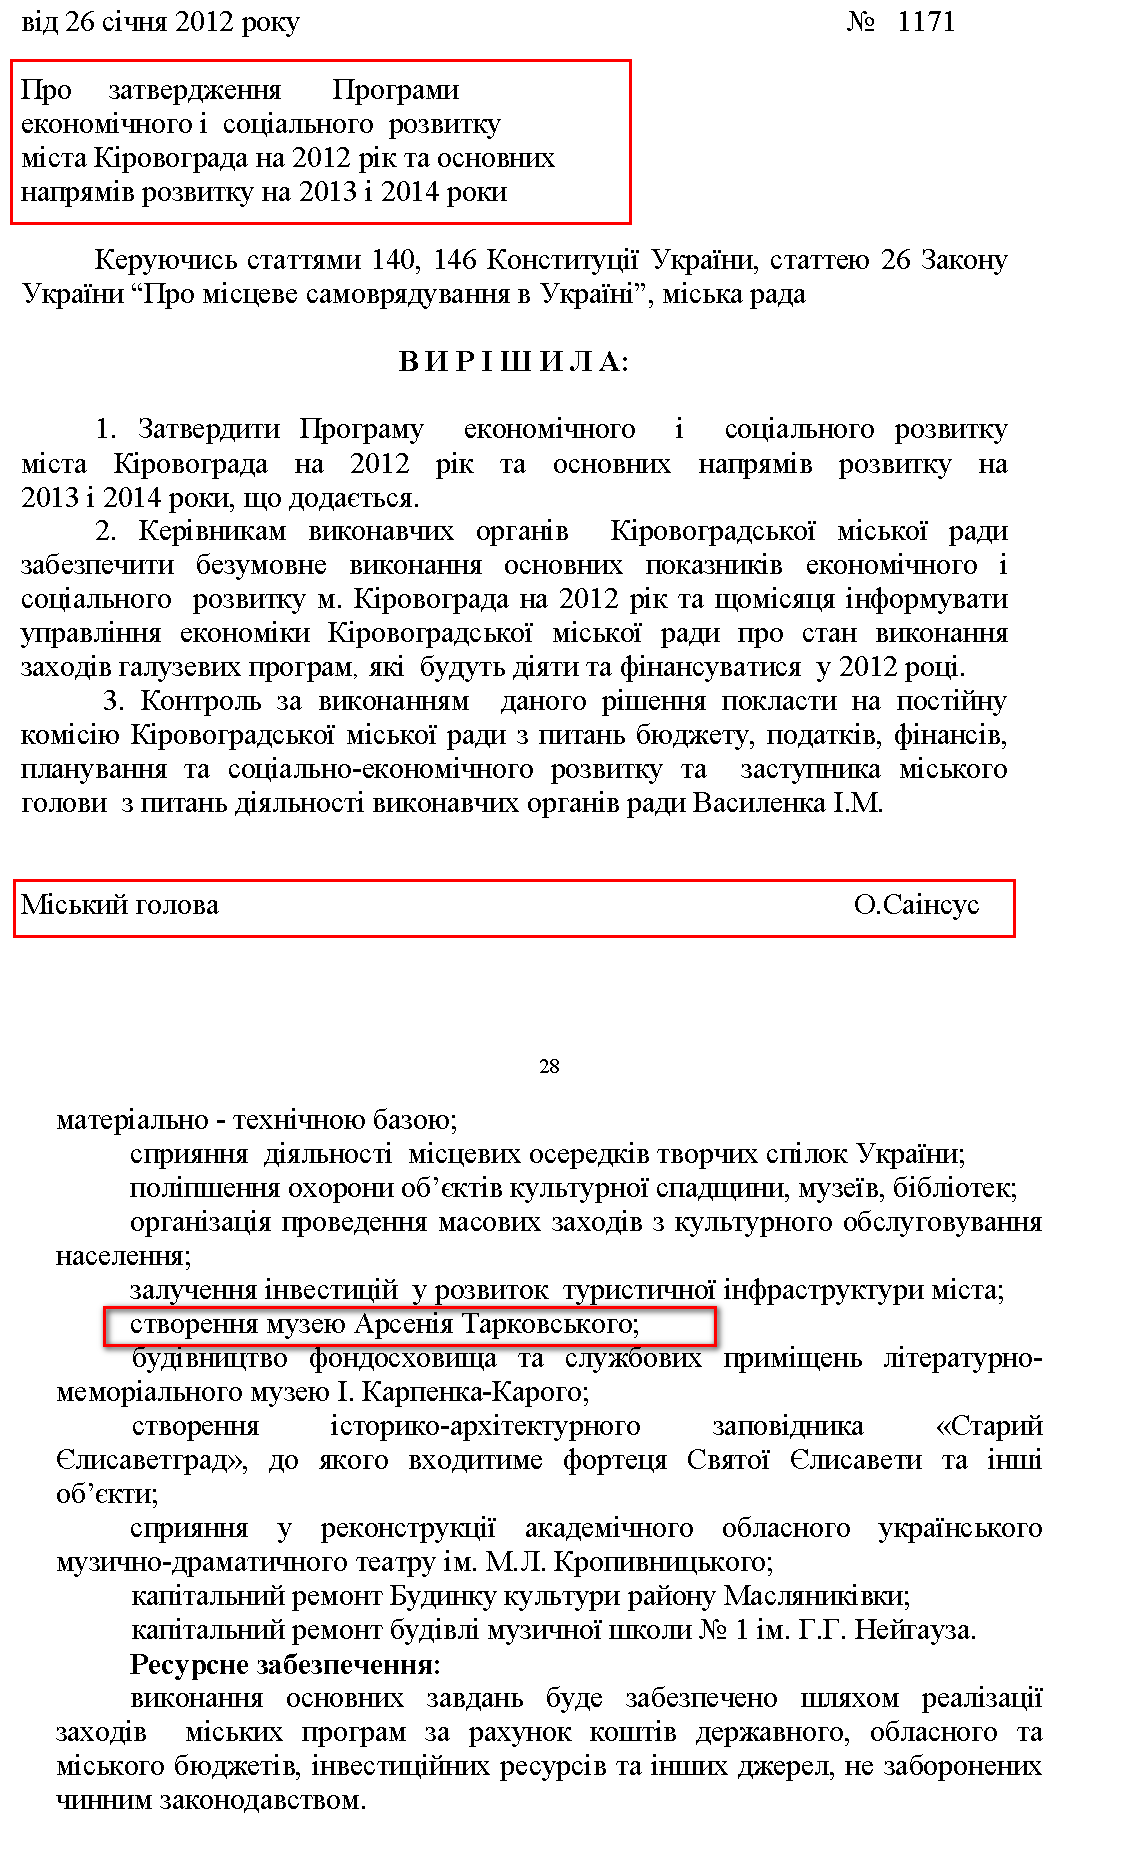 http://kr-rada.gov.ua/decisions/date/4?date=2012-01-26